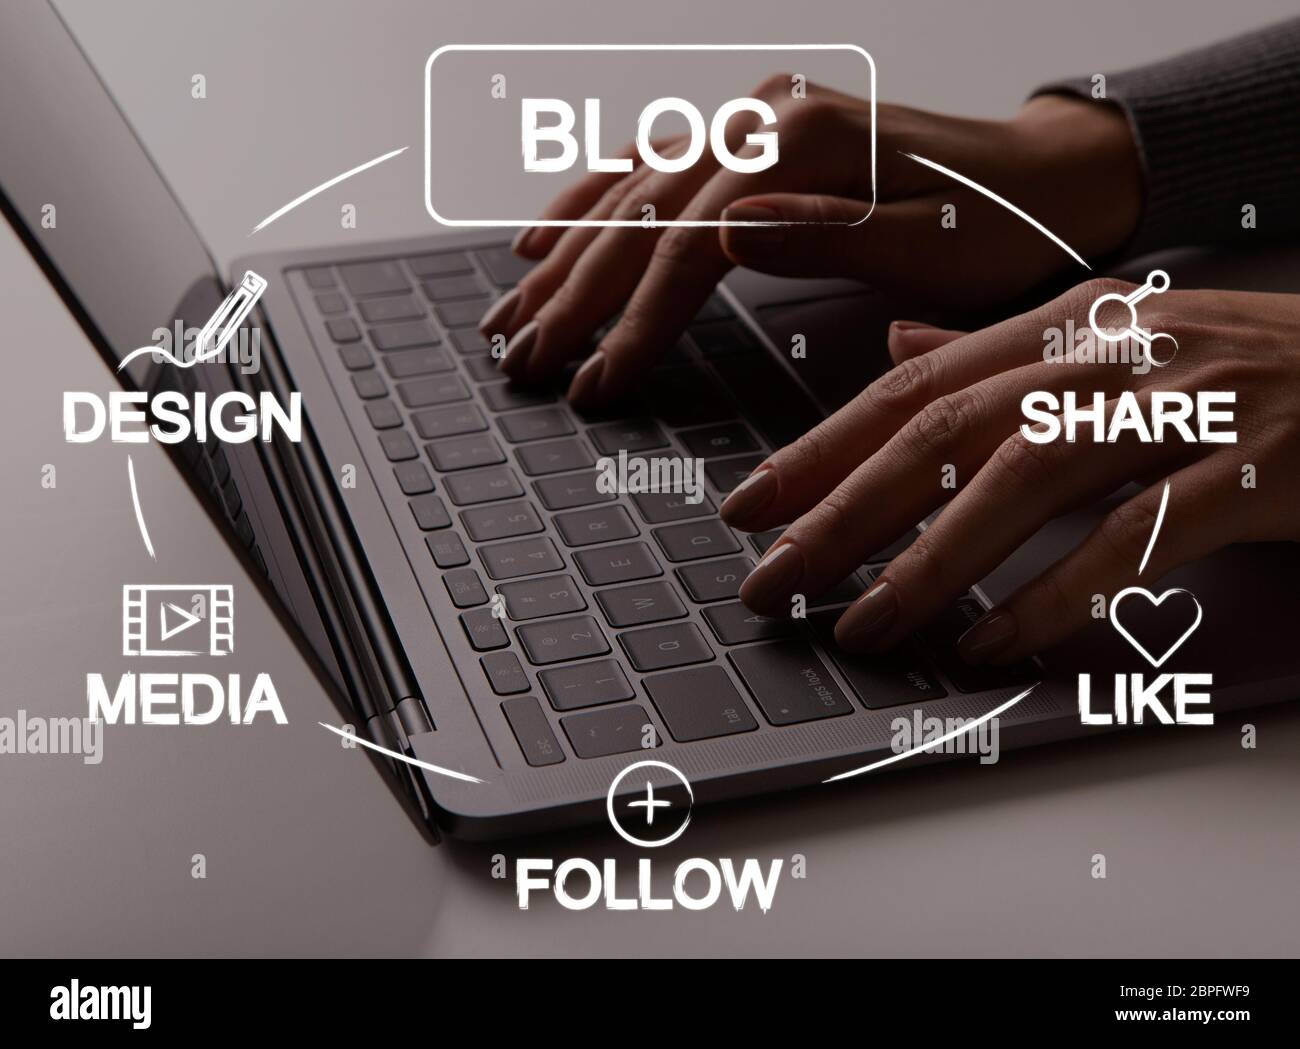 Bloggerin, die am Laptop arbeitet, neuen Post veröffentlicht, Collage mit Social-Media-Icons auf virtuellem Bildschirm Stockfoto